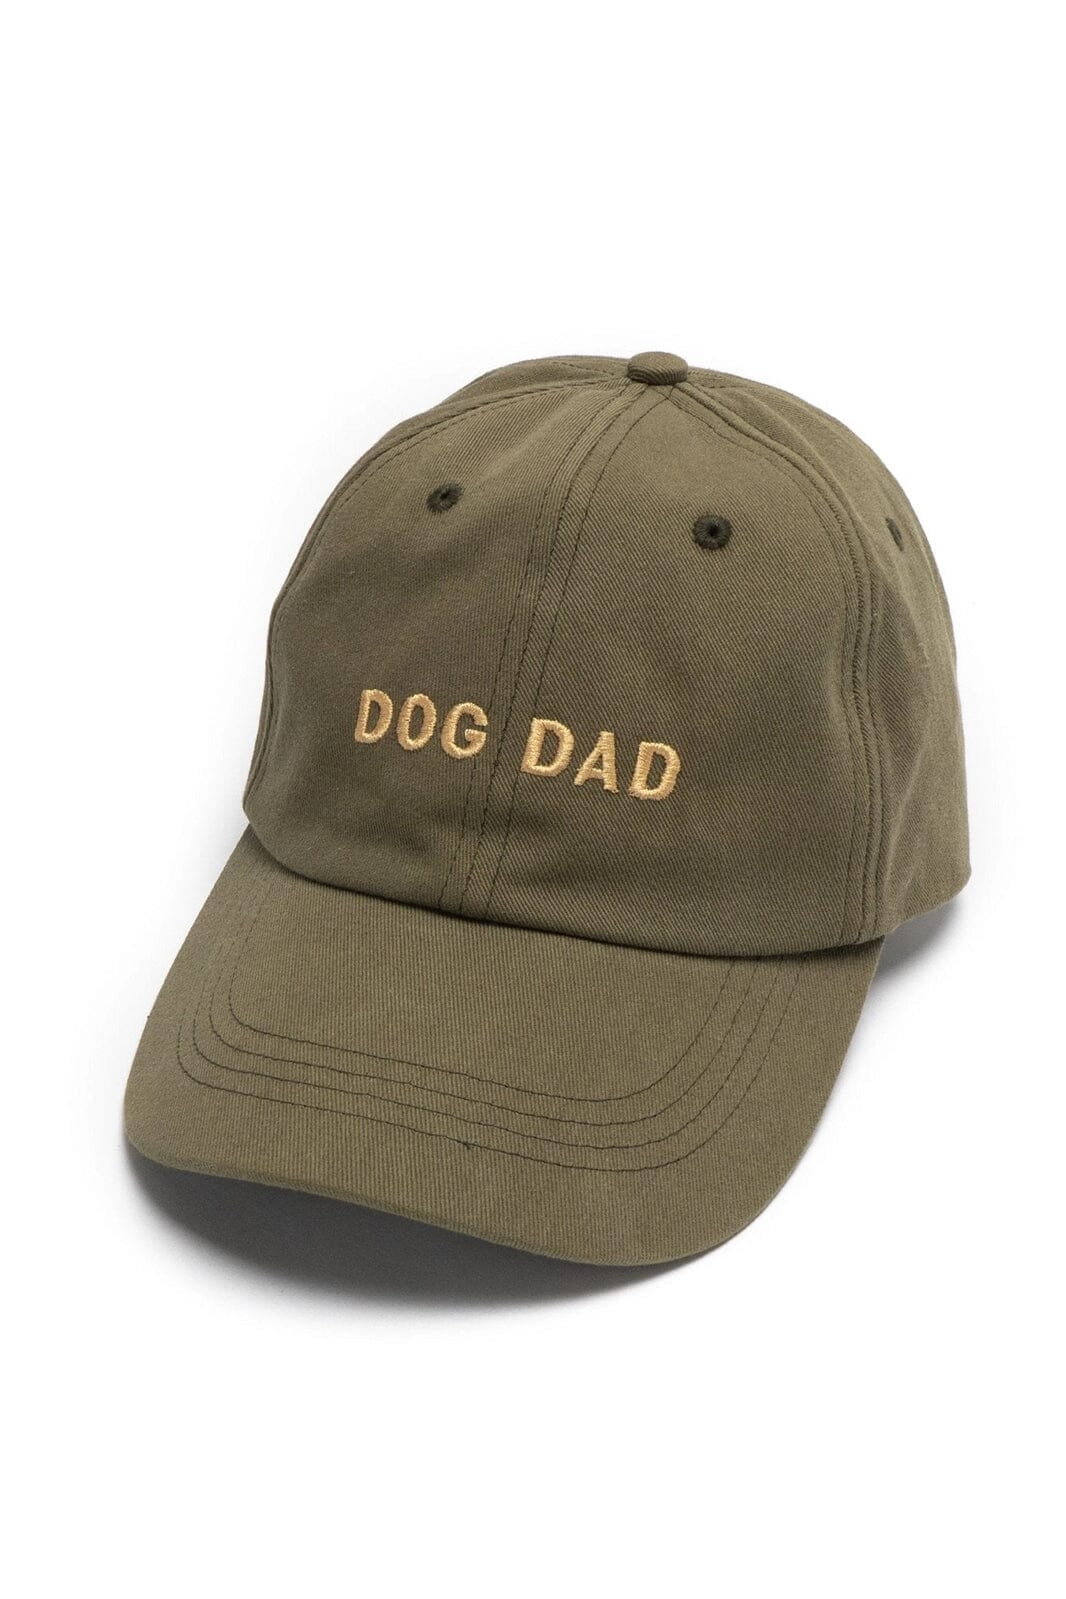 Dog Dad Hat - OLIVE - OS